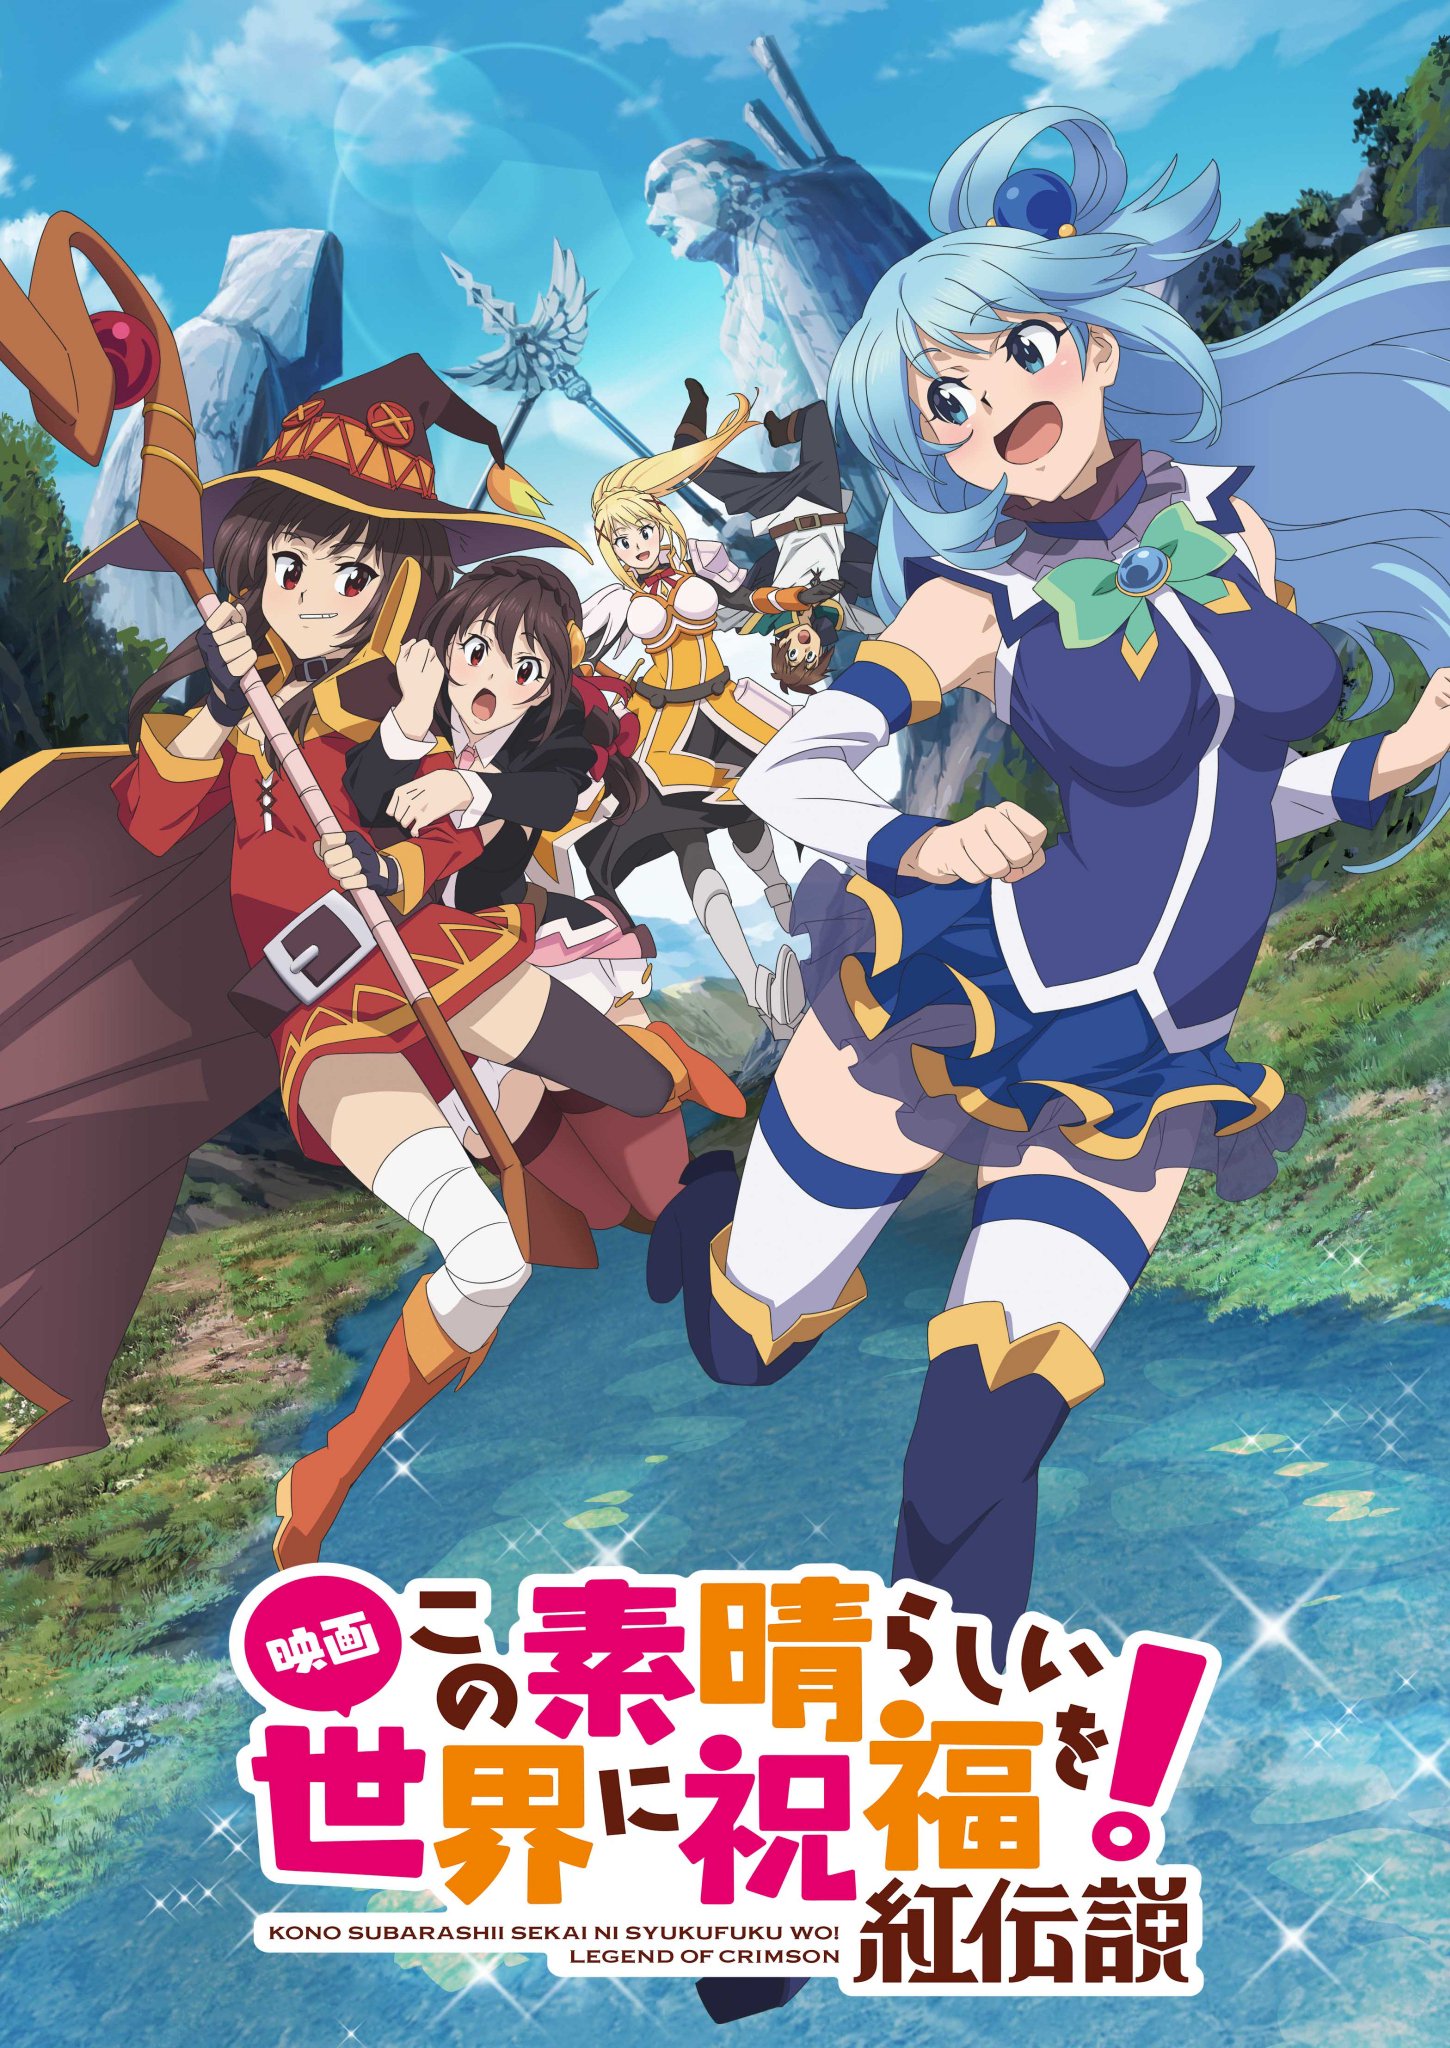 Konosuba movie poster